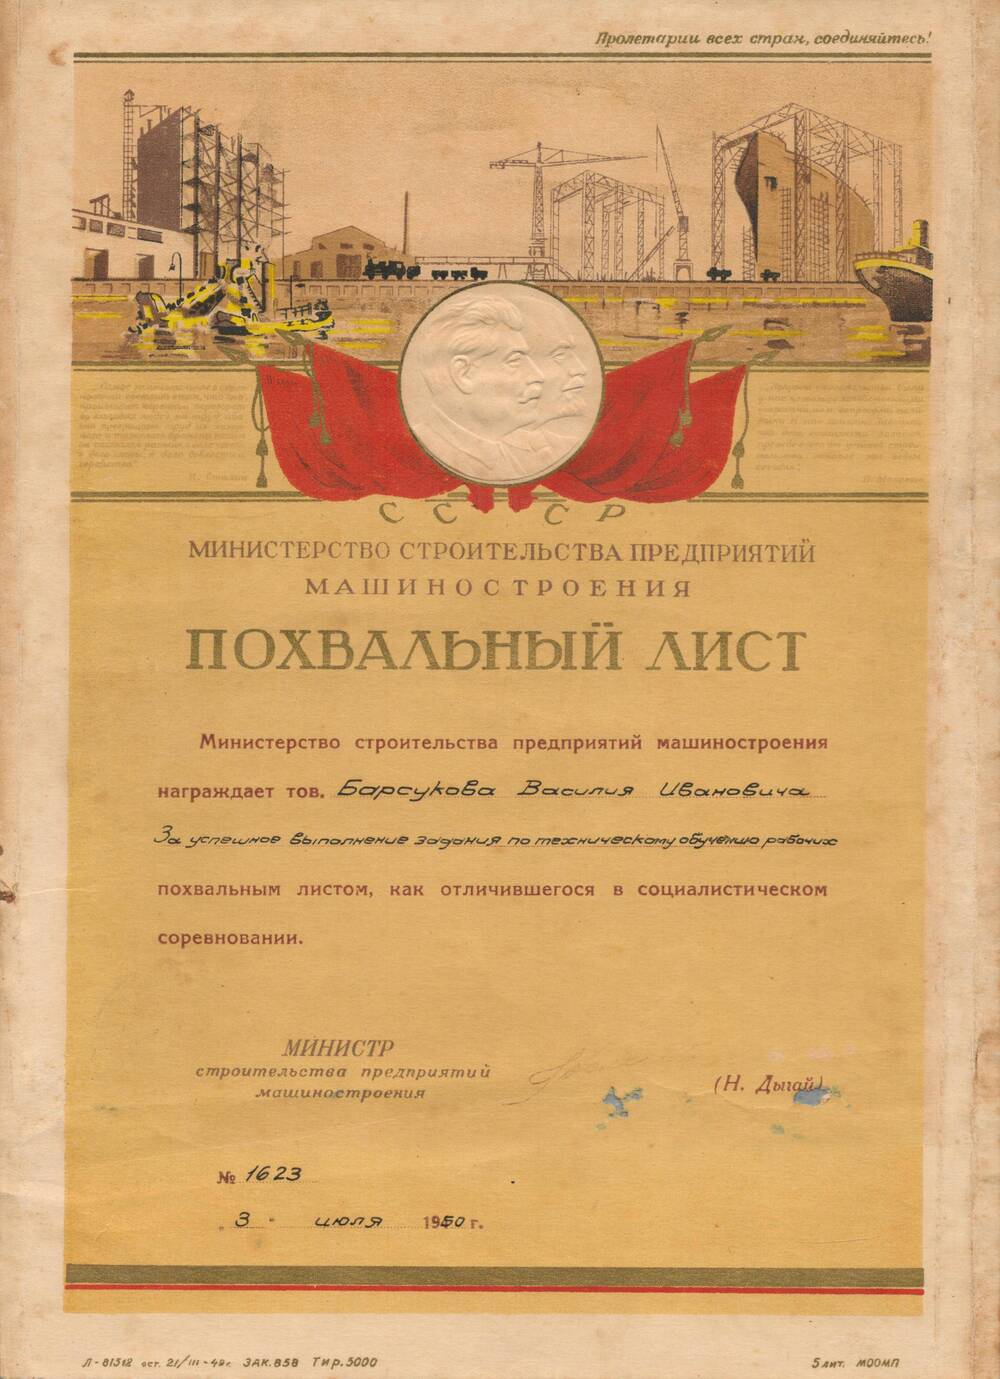 Похвальный лист Барсукова Василия Ивановича.